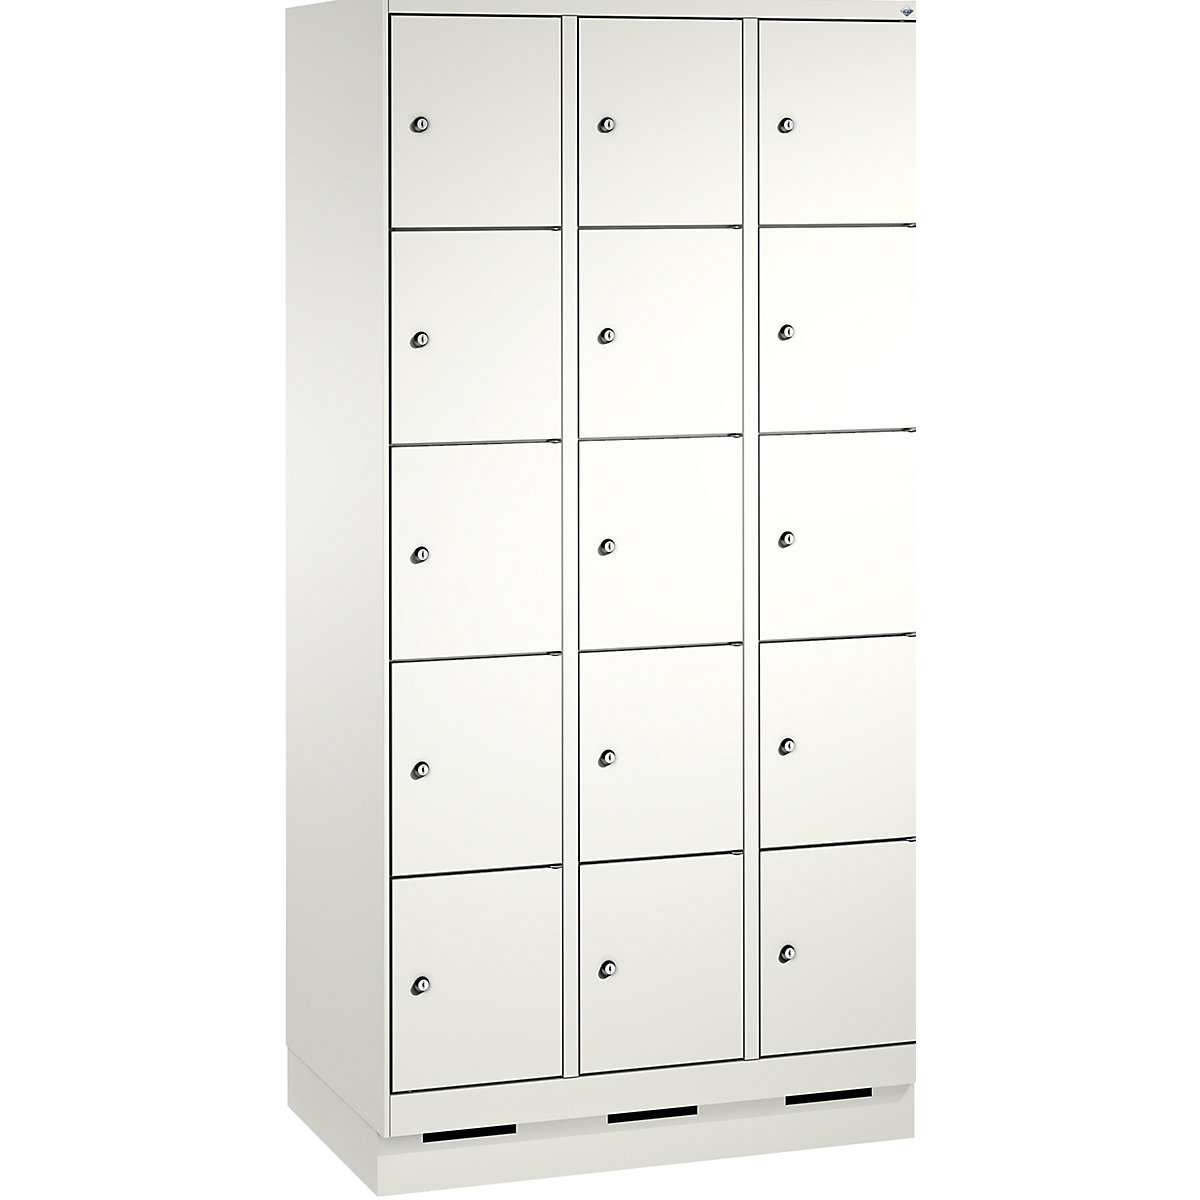 EVOLO locker unit, with plinth – C+P, 3 compartments, 5 shelf compartments each, compartment width 300 mm, traffic white / traffic white